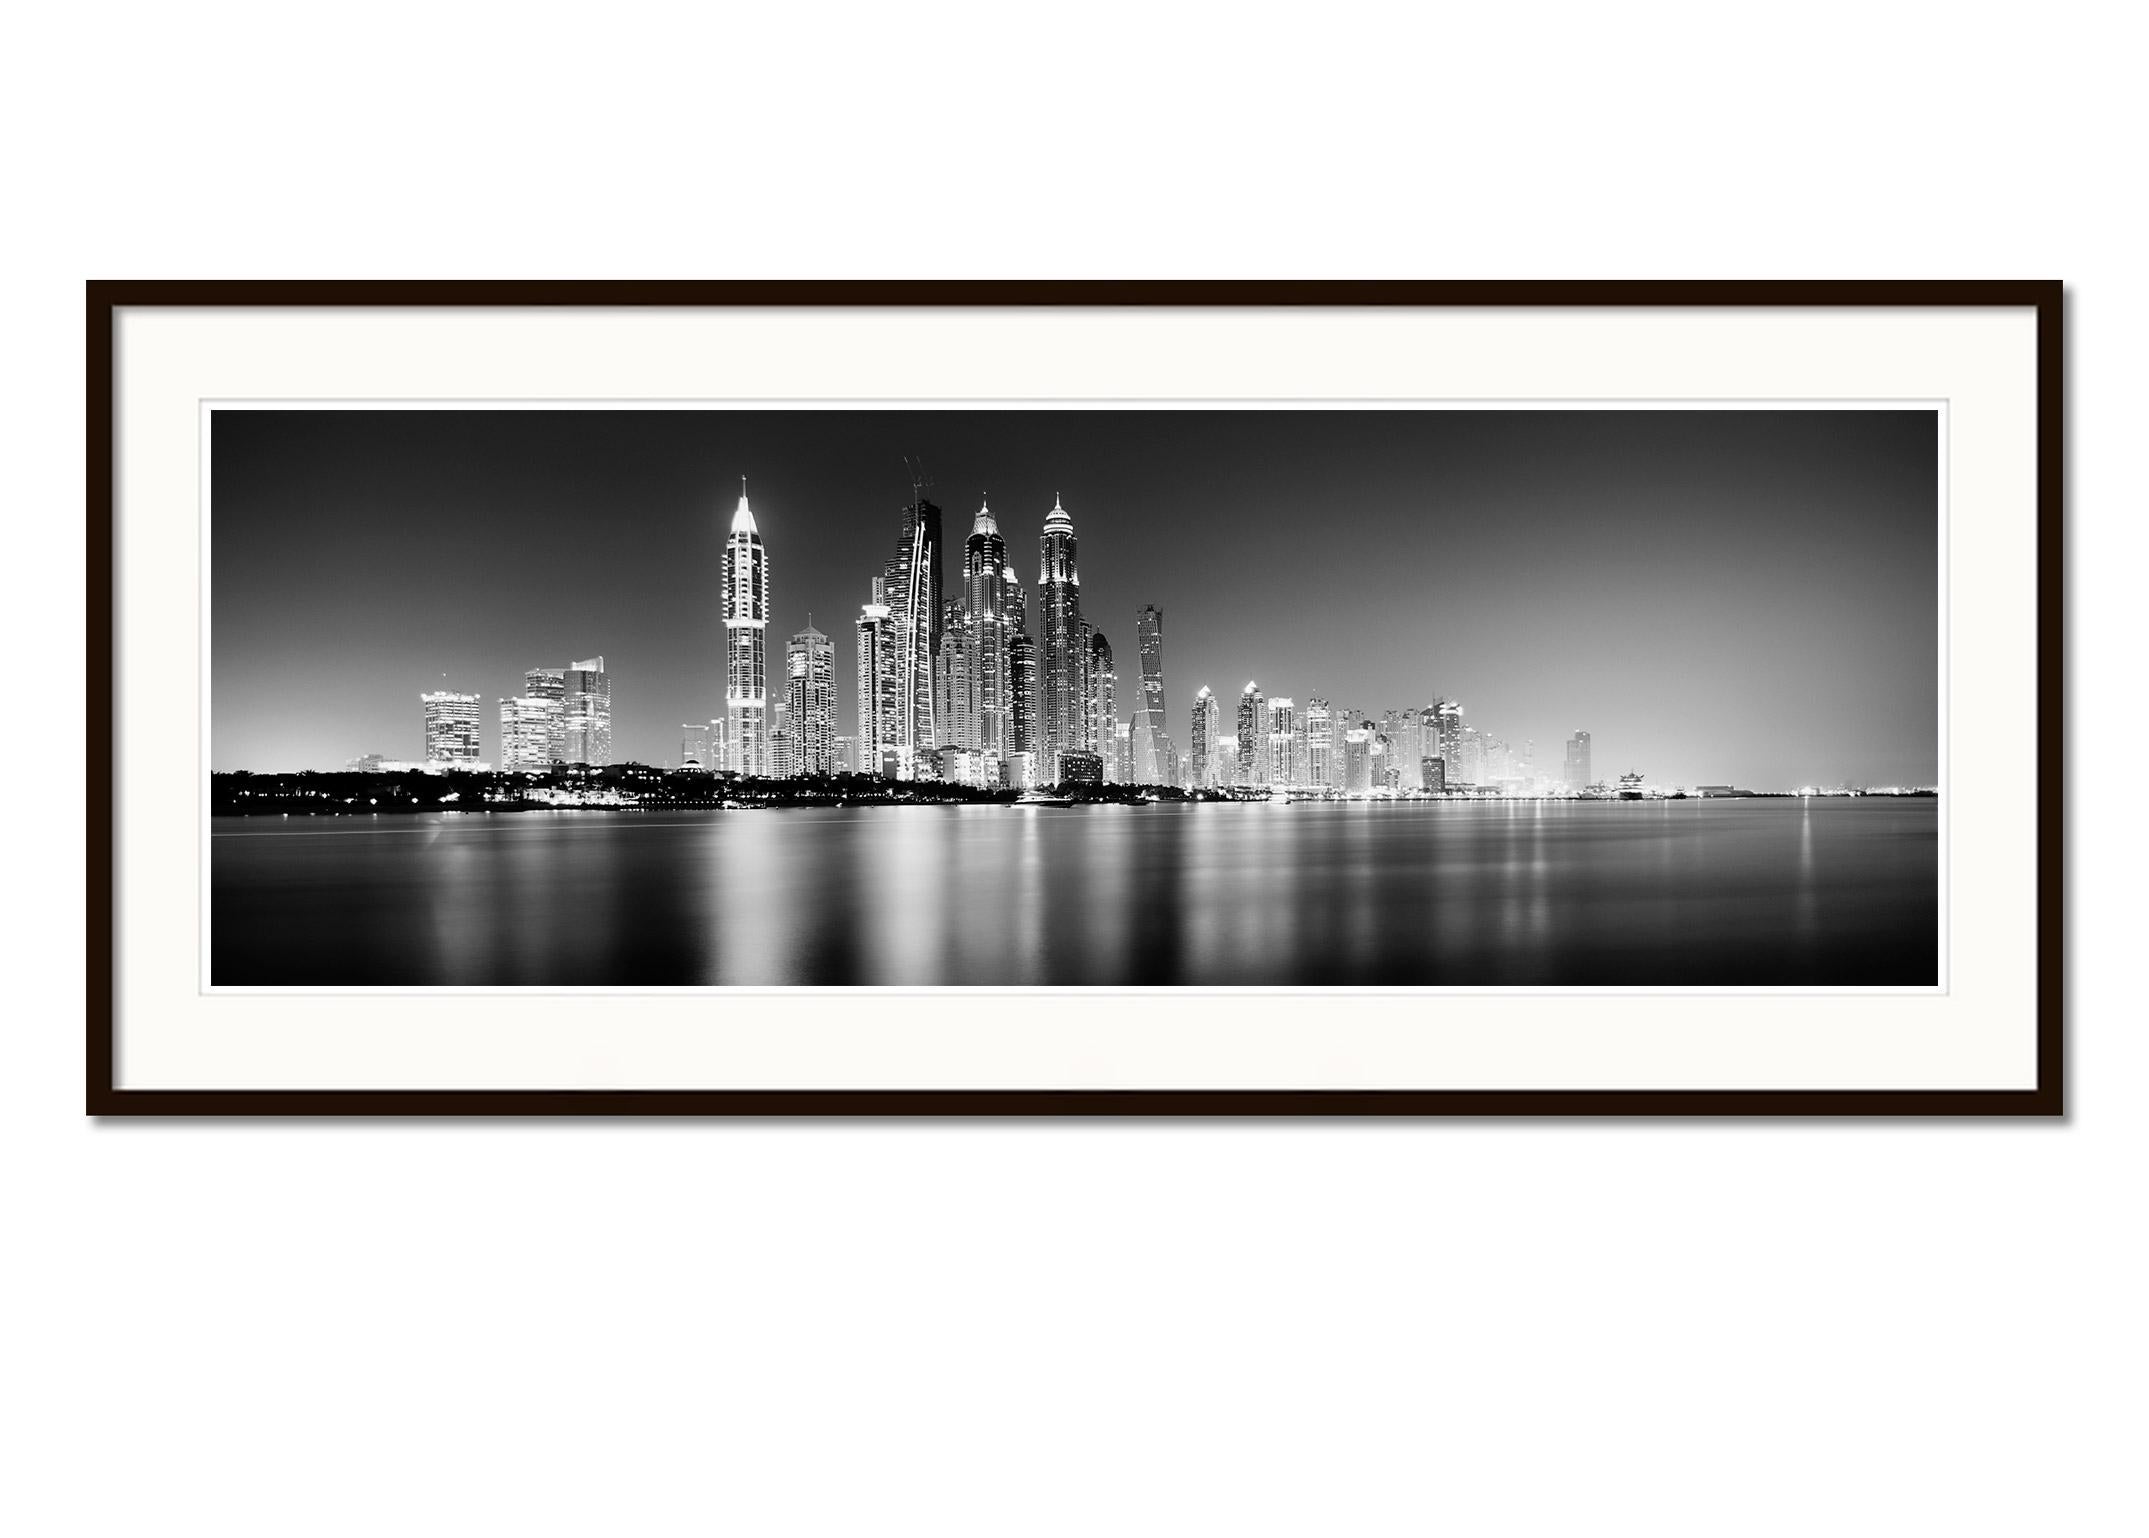 Schwarz-Weiß-Panoramafotografie mit Meerblick - Stadtbild - Landschaftsfotografie. Beeindruckende Skyline von Dubai mit dem Hafen und den Wolkenkratzern bei Nacht. Pigmenttintendruck, Auflage 9, signiert, betitelt, datiert und nummeriert vom